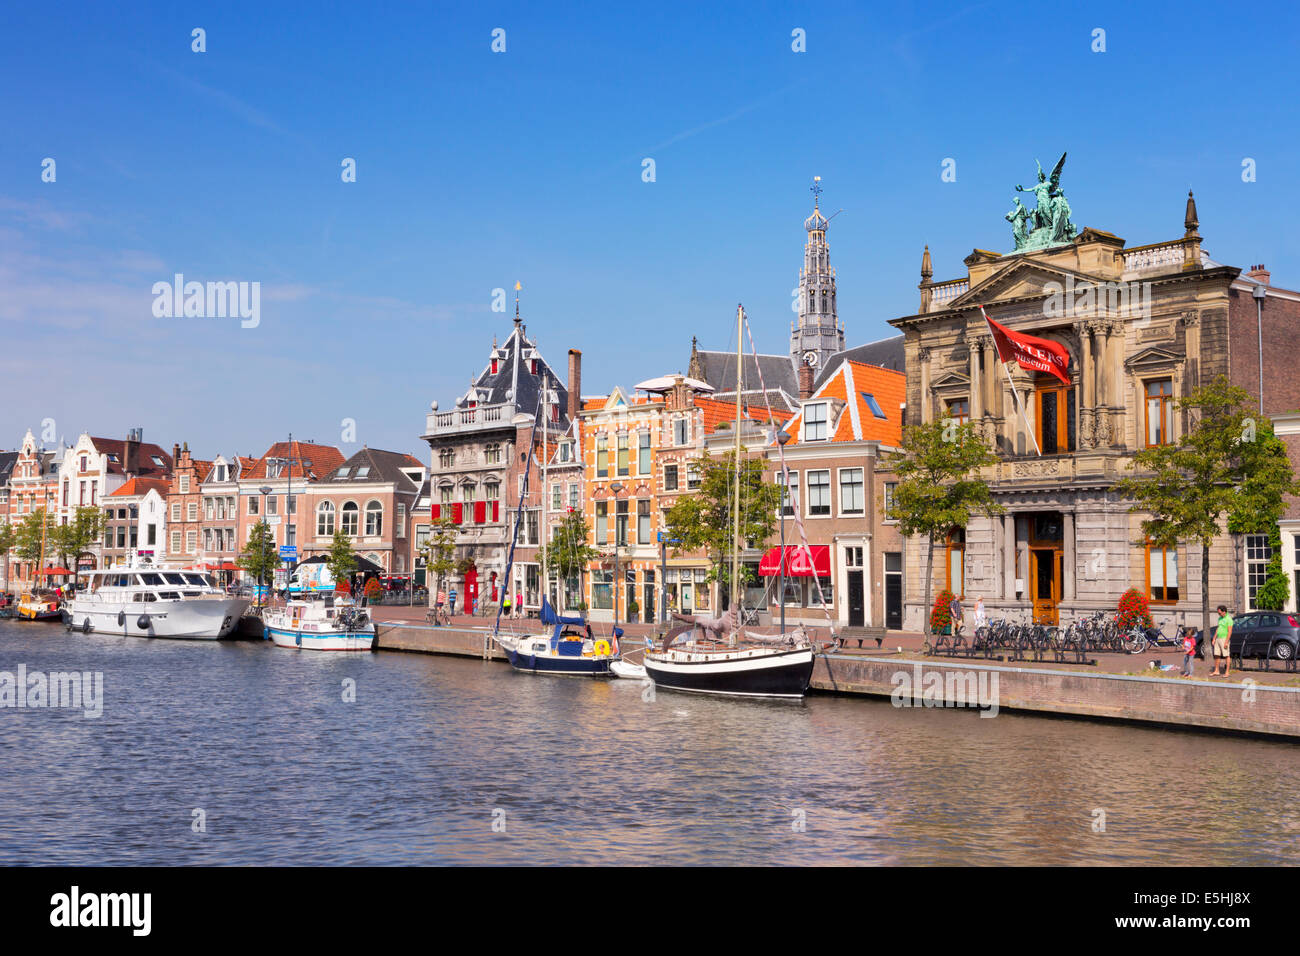 La ville de Haarlem, Pays-Bas le long de la rivière Spaarne Banque D'Images